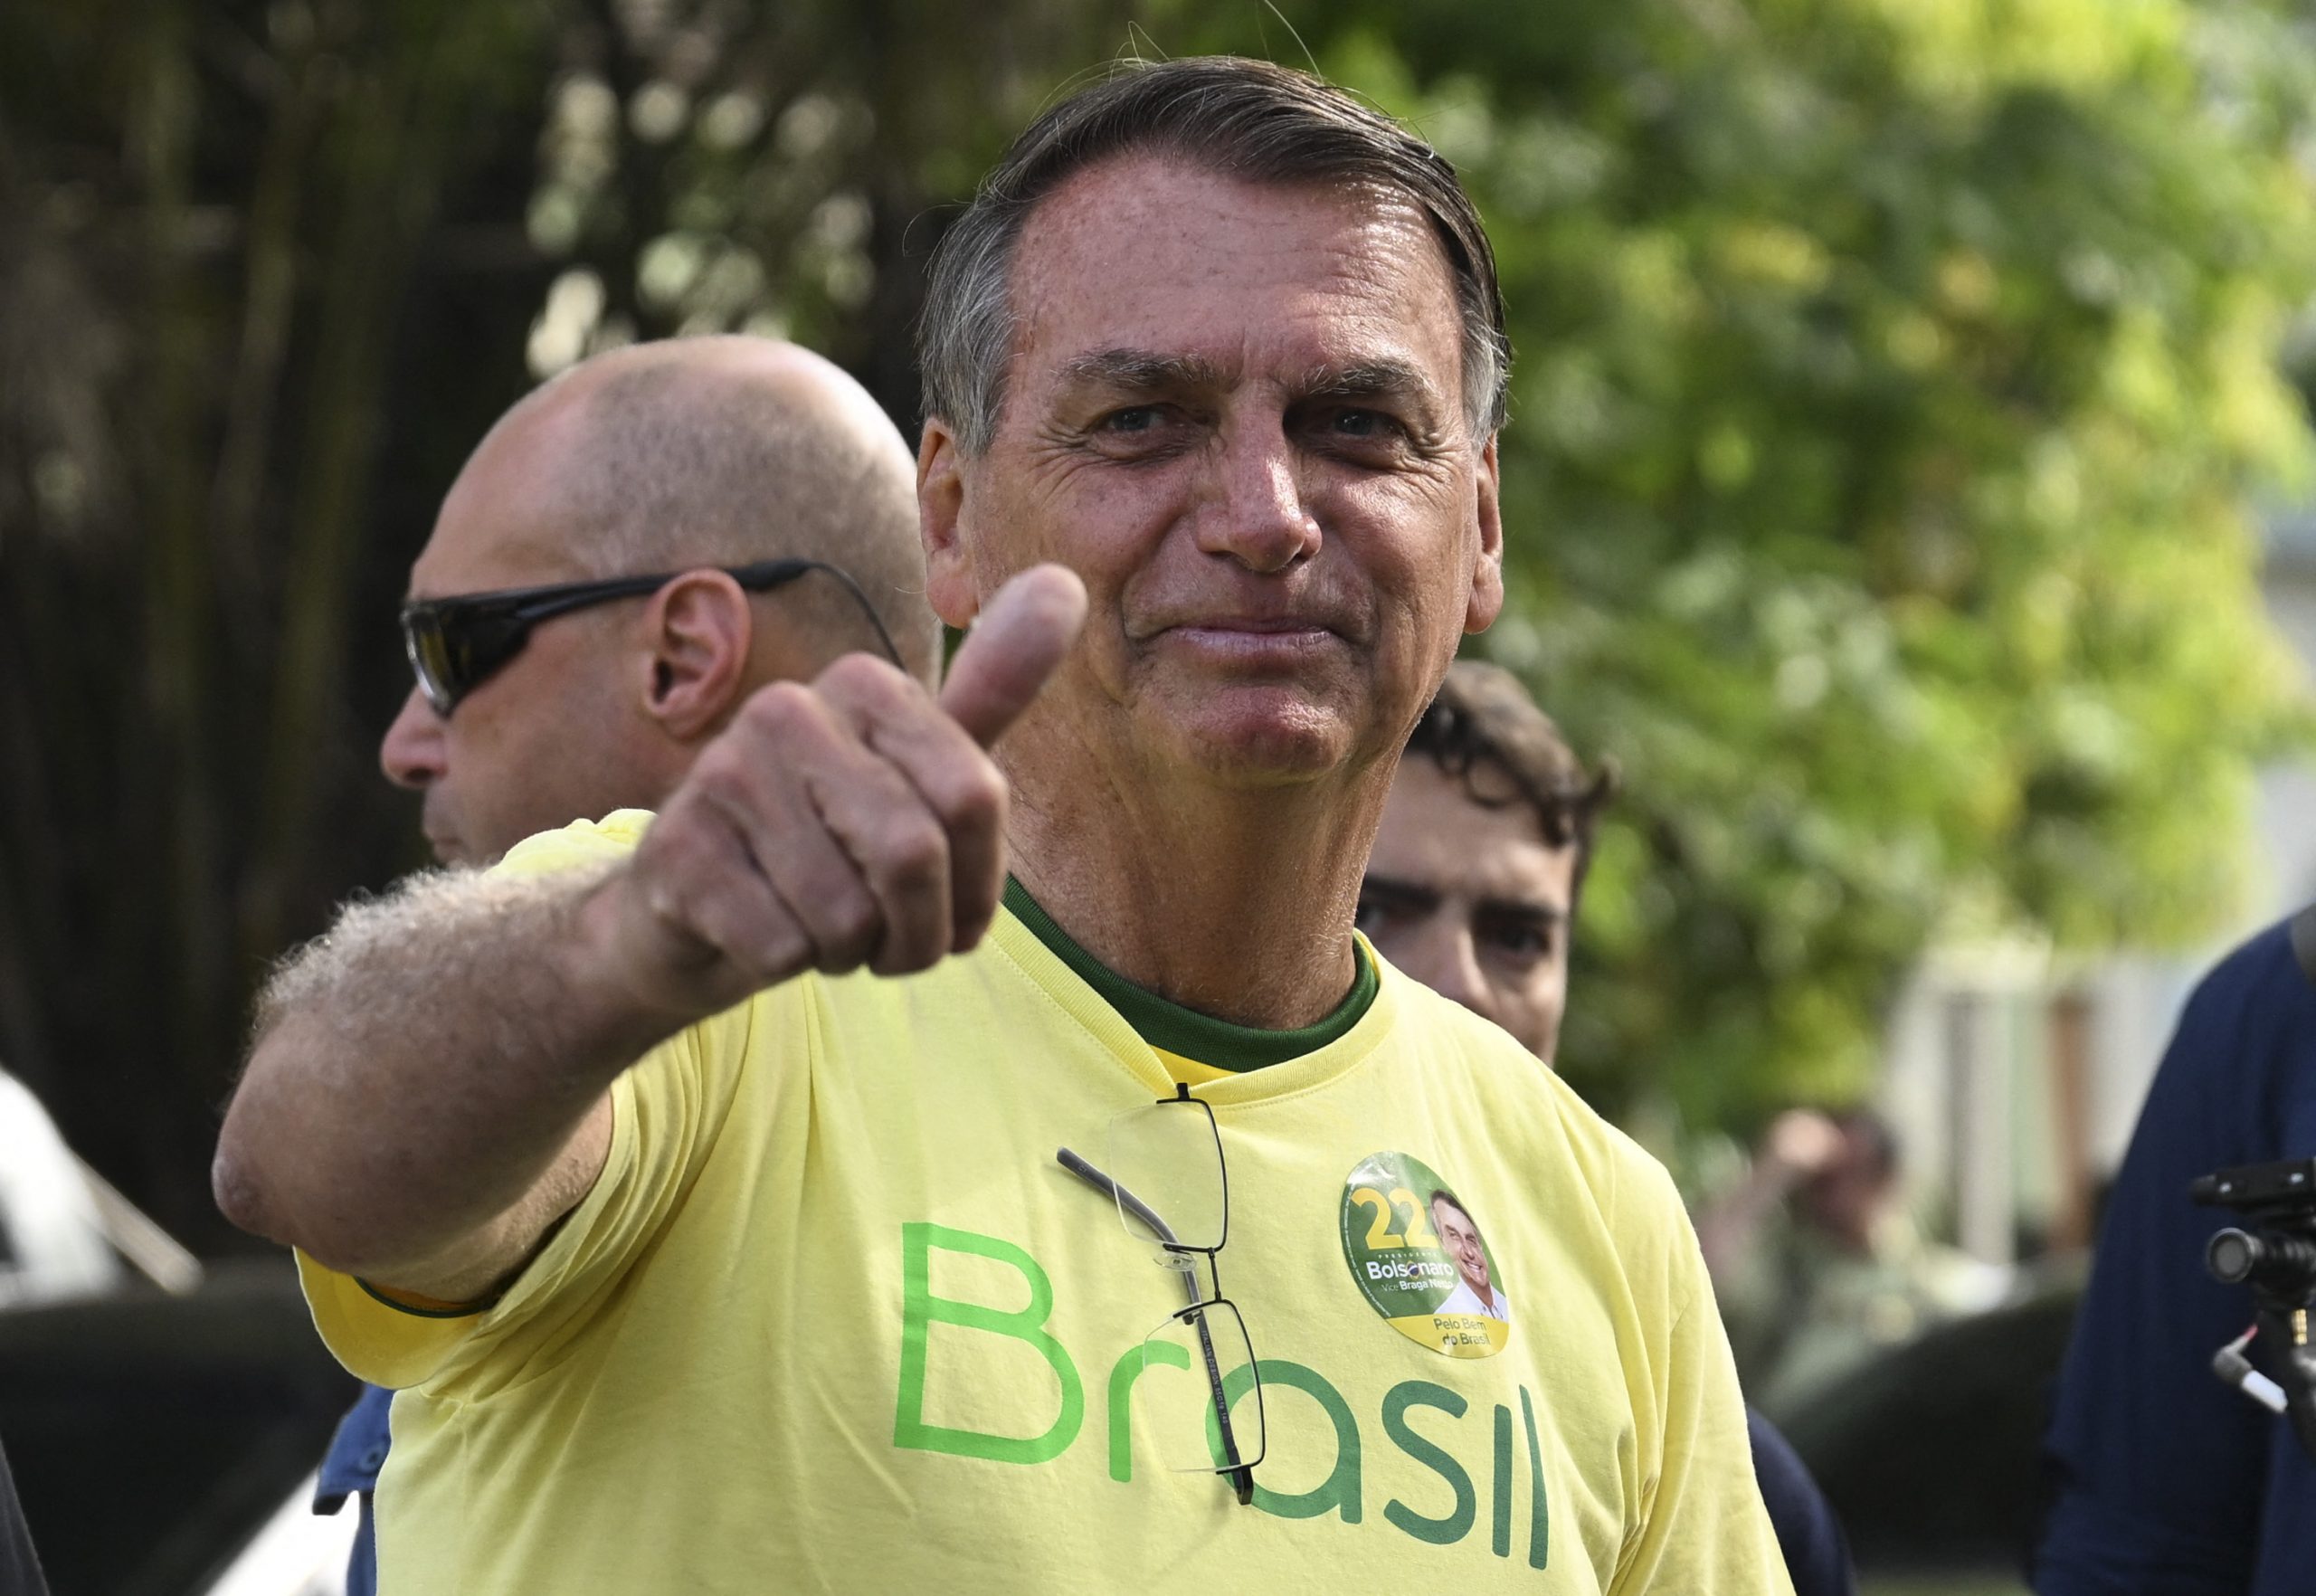 看世界／博尔索纳罗未承认败选 支持者不满结果抗争 外界忧巴西陷混乱